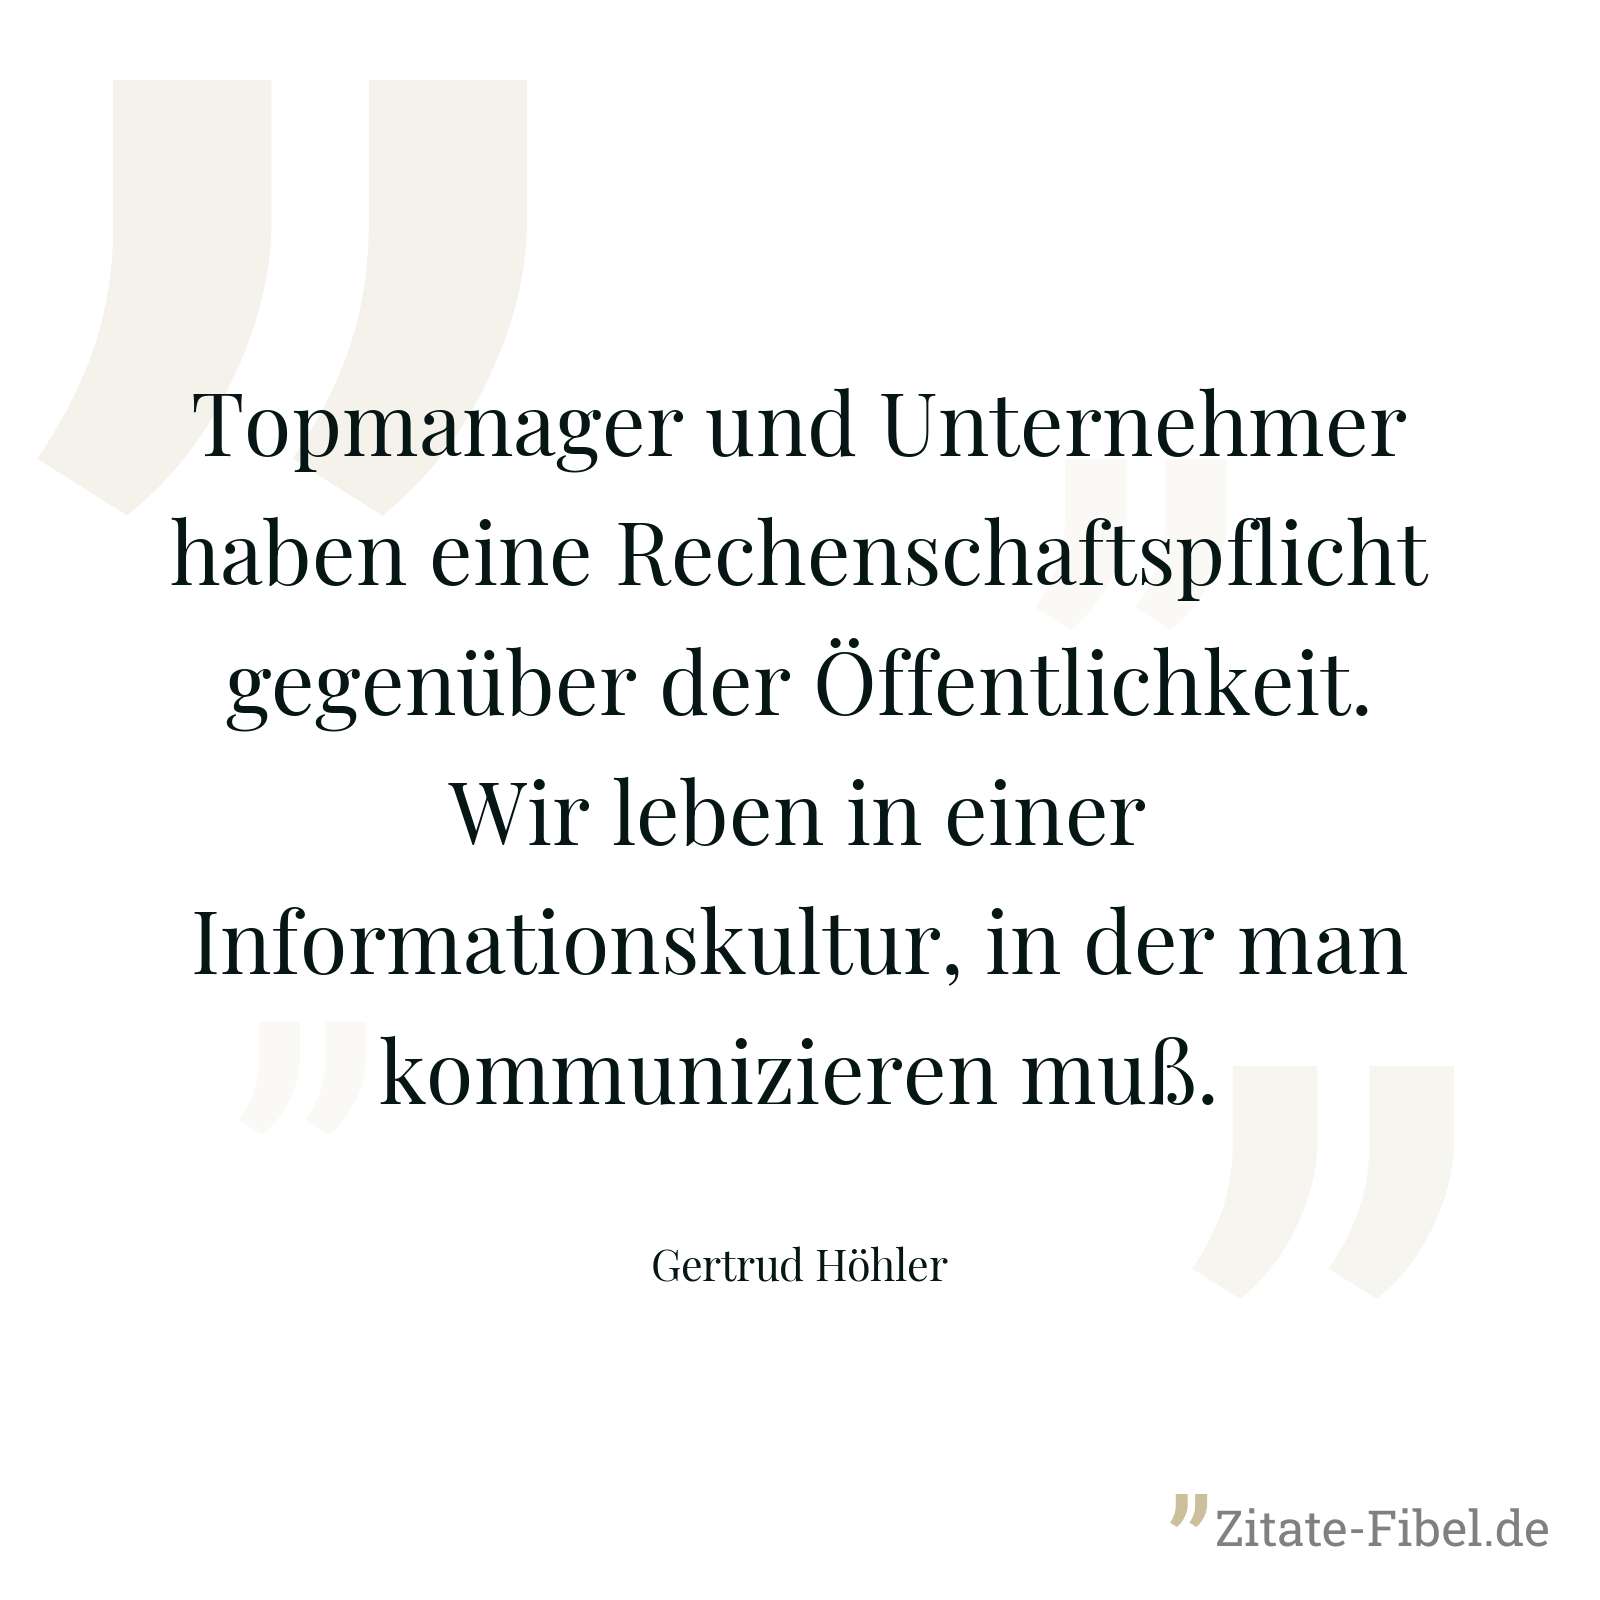 Topmanager und Unternehmer haben eine Rechenschaftspflicht gegenüber der Öffentlichkeit. Wir leben in einer Informationskultur, in der man kommunizieren muß. - Gertrud Höhler